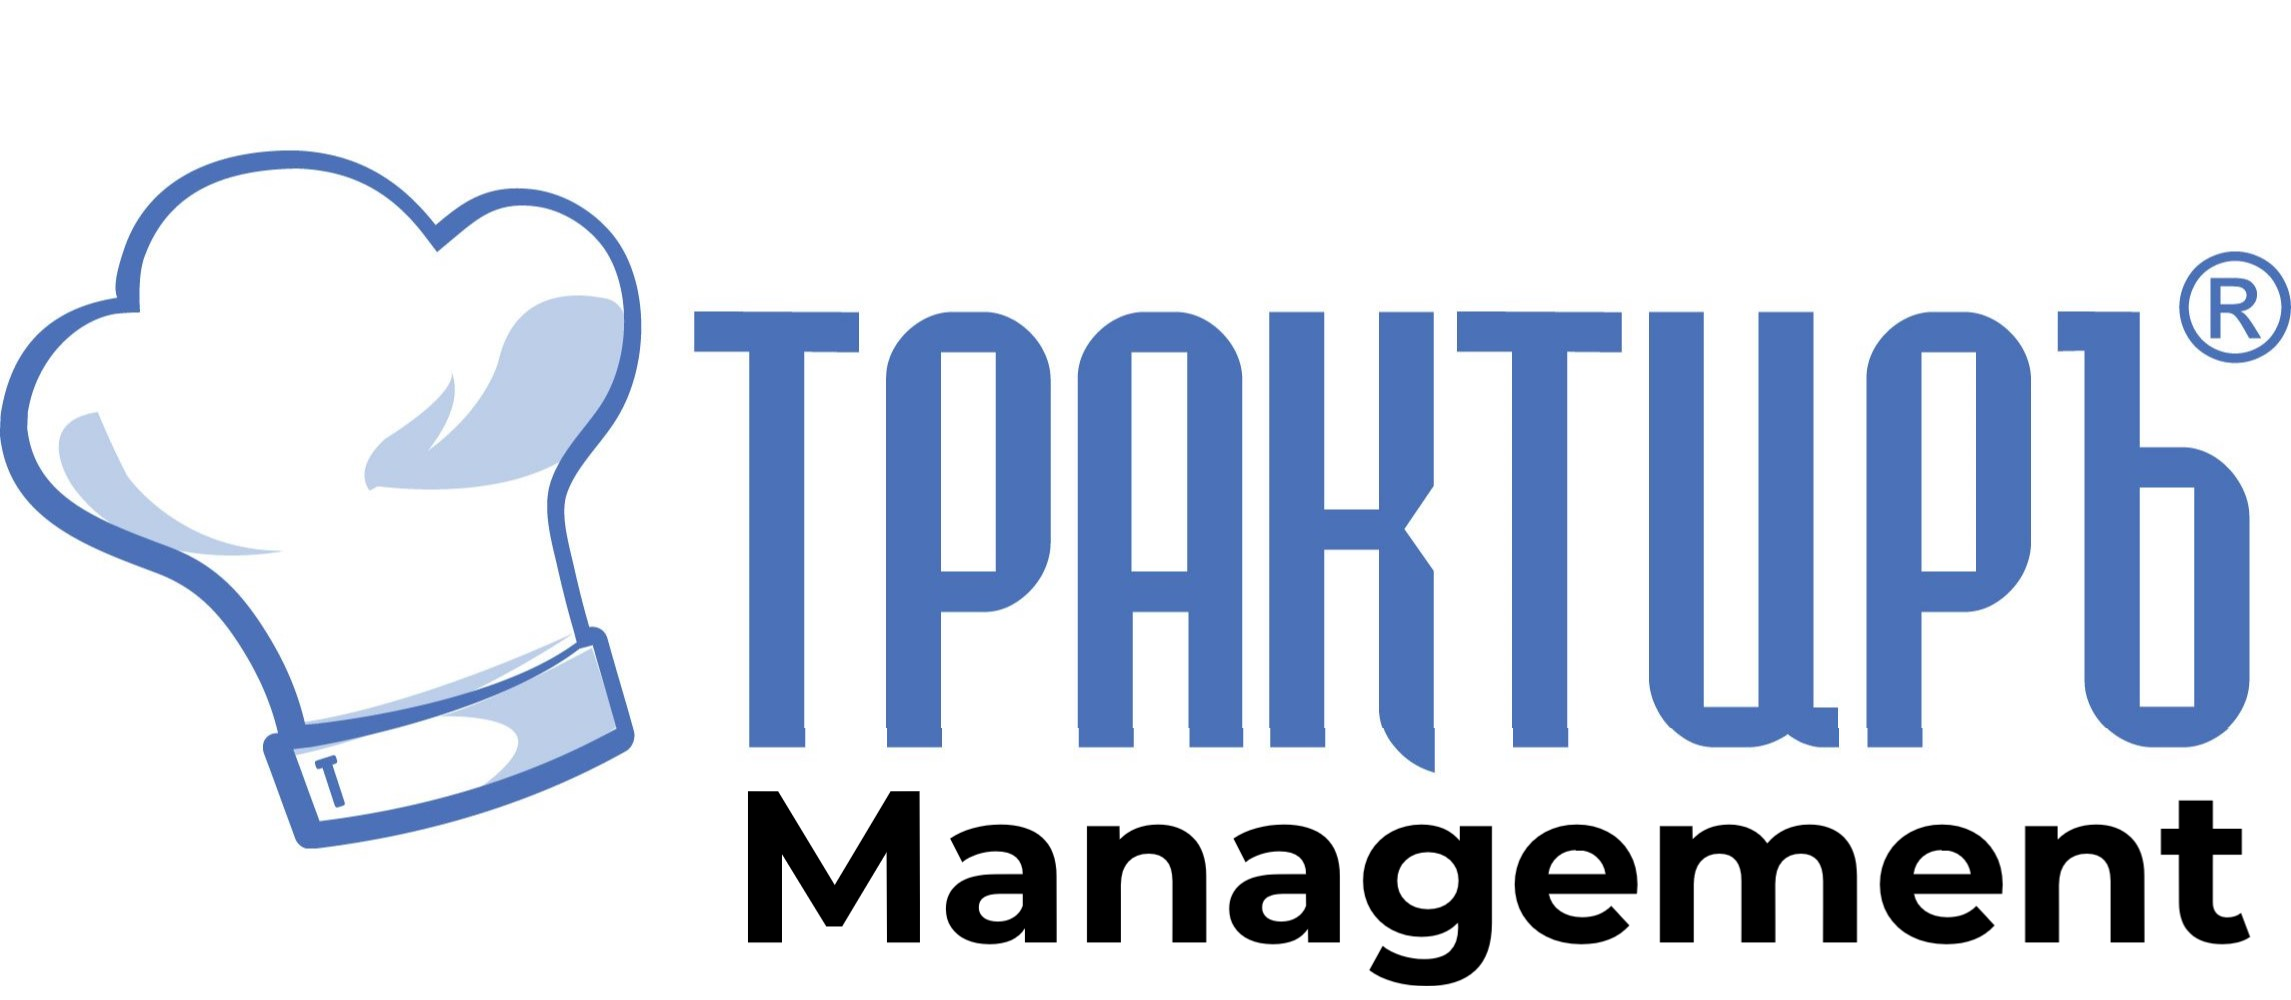 Трактиръ: Management в Южно-Сахалинске